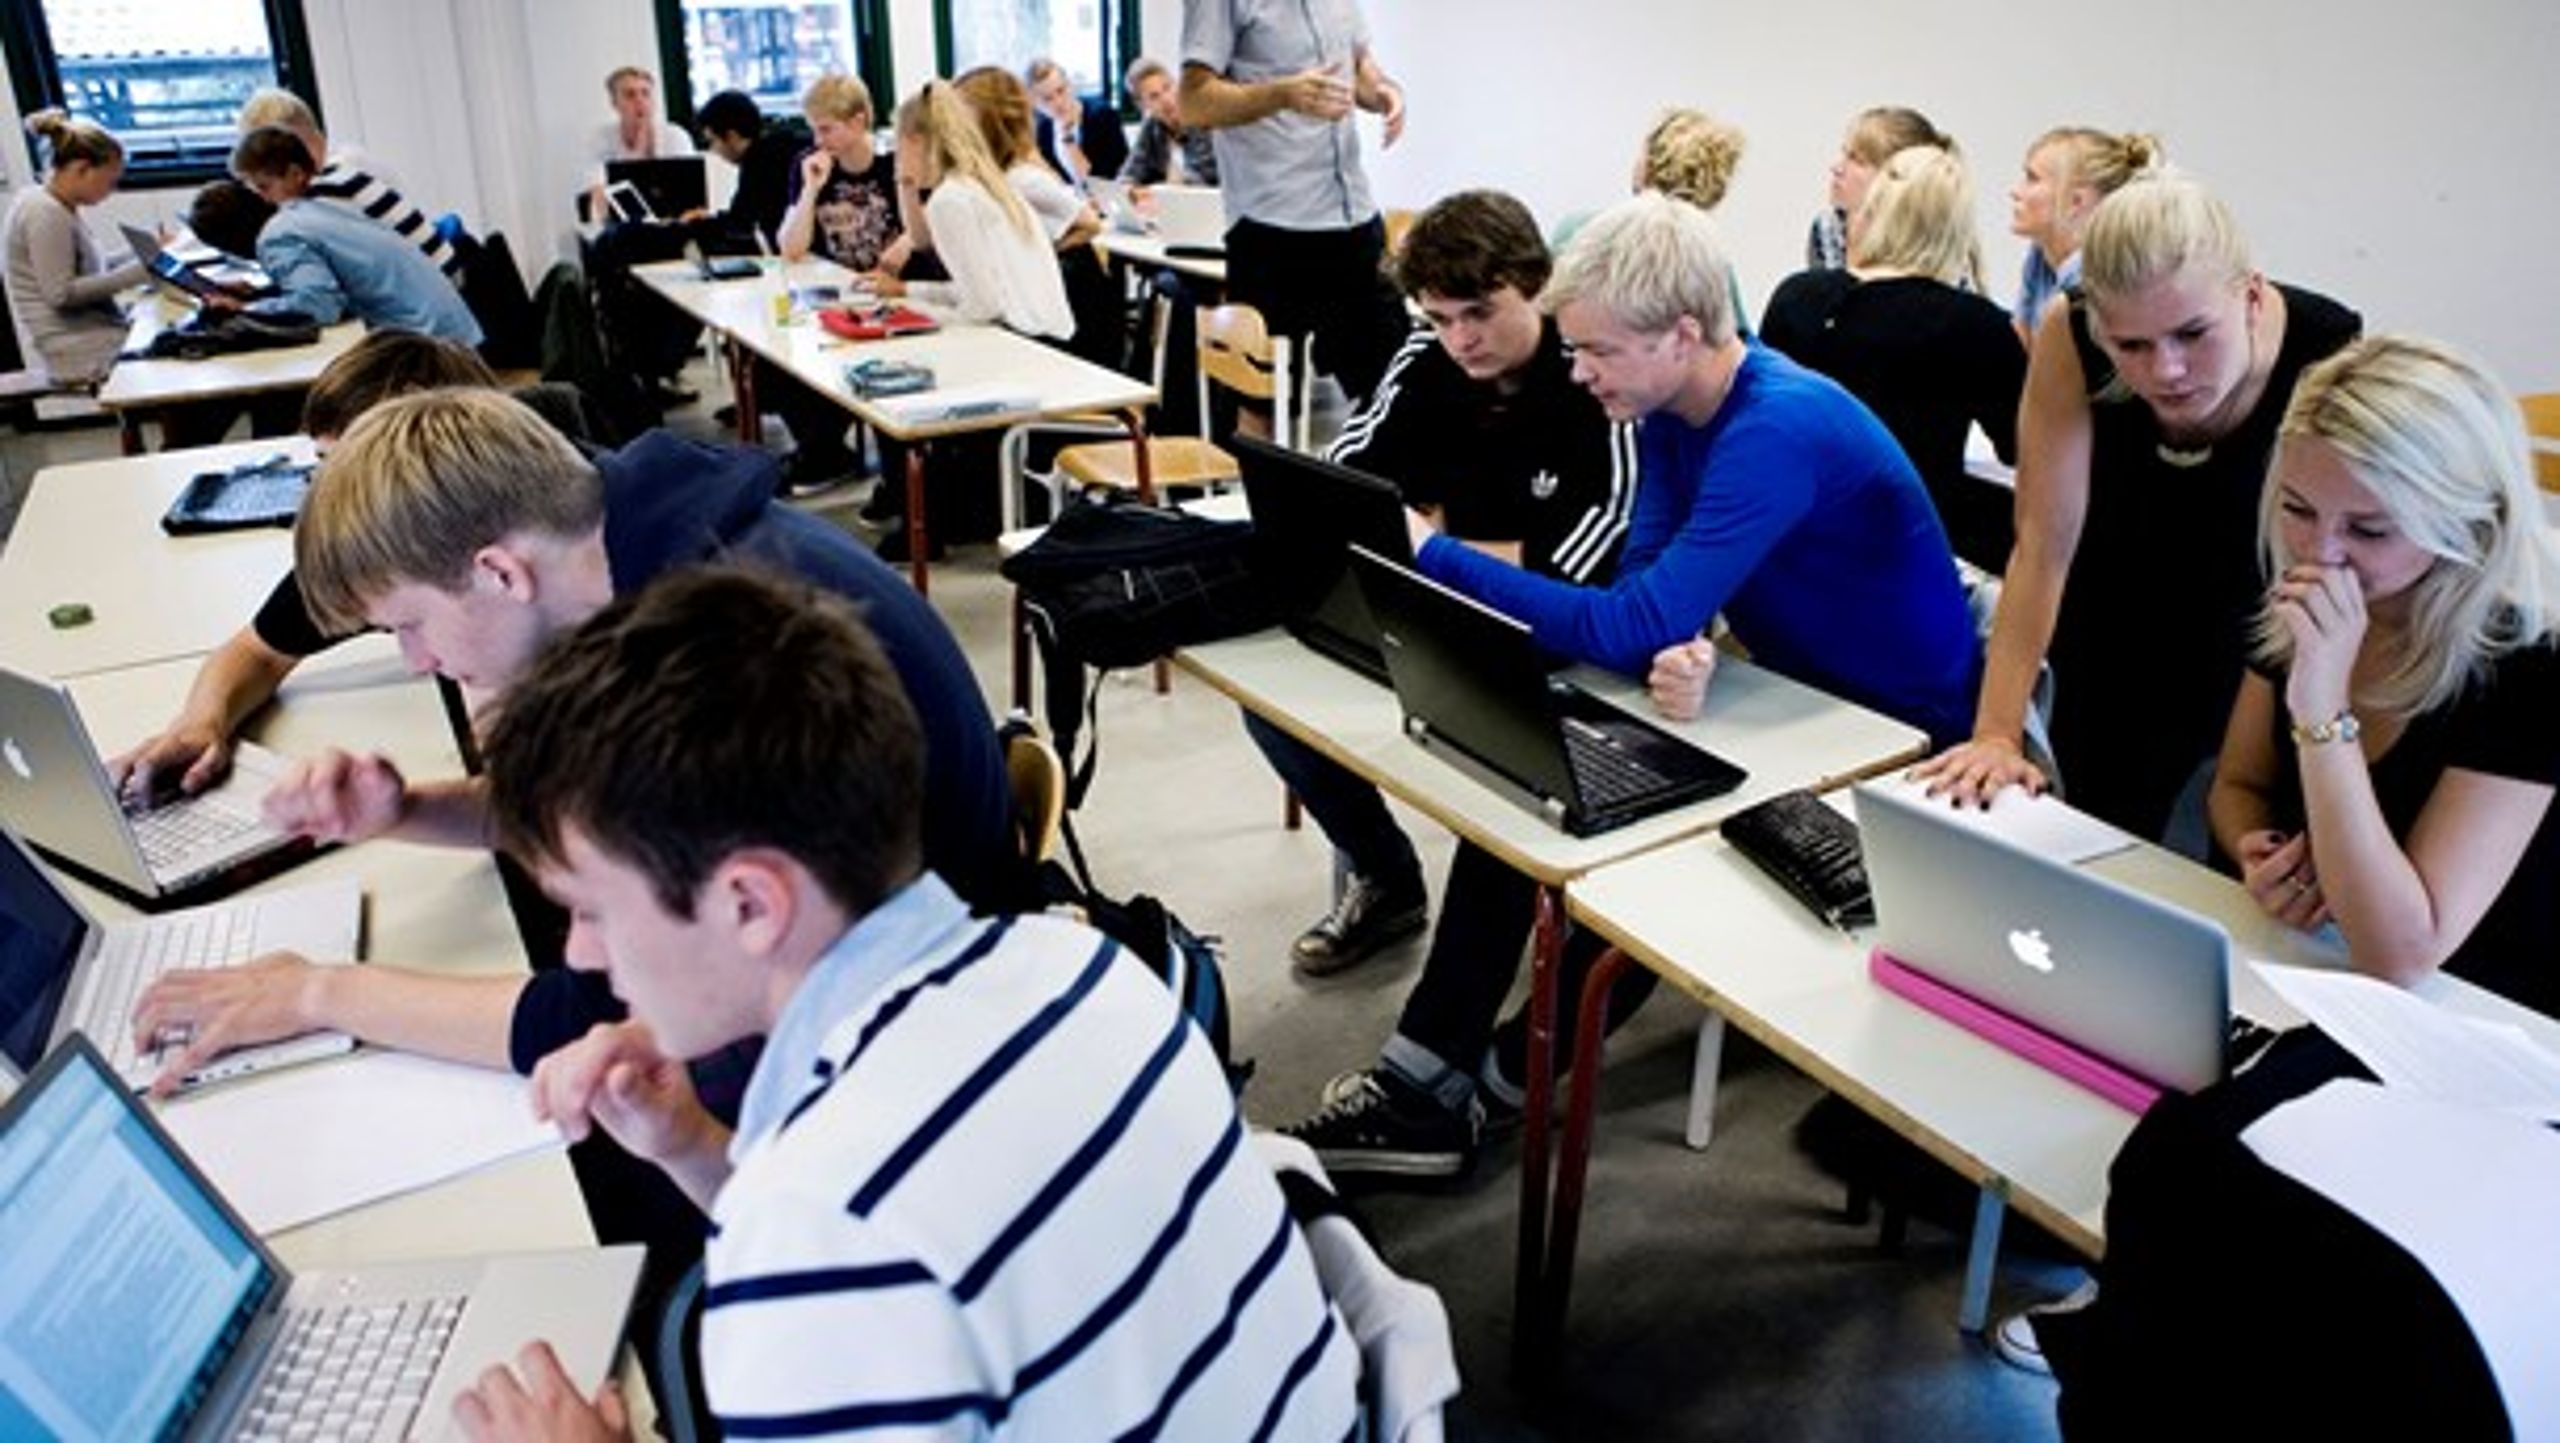 Der skal være bedre indeklima i klasselokalerne, skriver Michael H. Nielsen fra Dansk Byggeri.